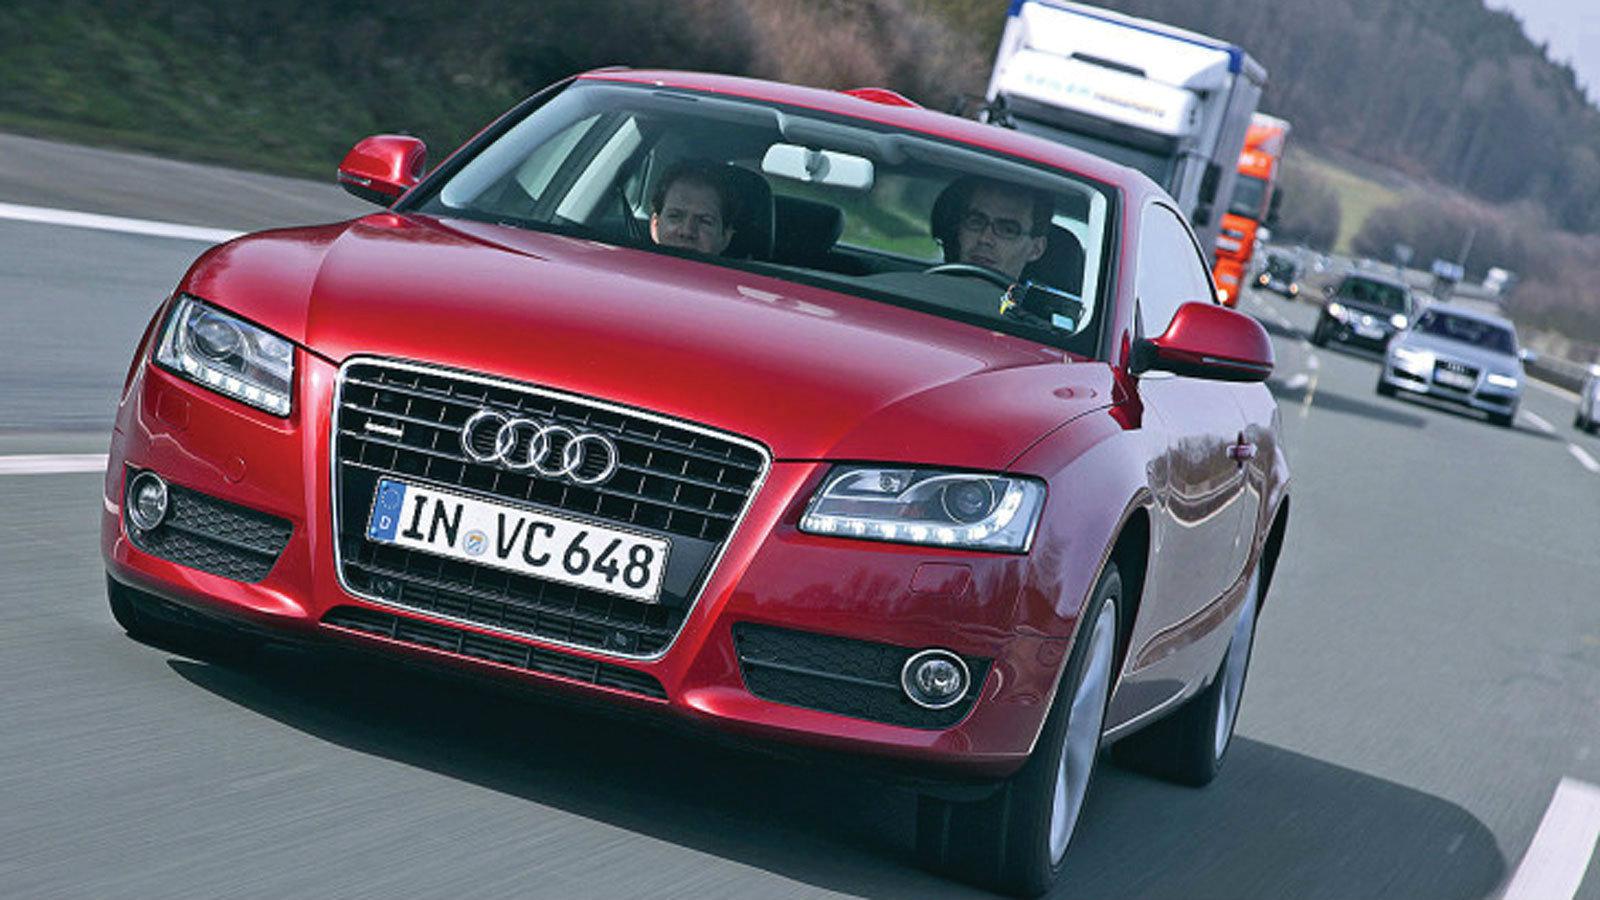 Η Audi βάζει τέλος στις ζαλάδες των πίσω επιβατών